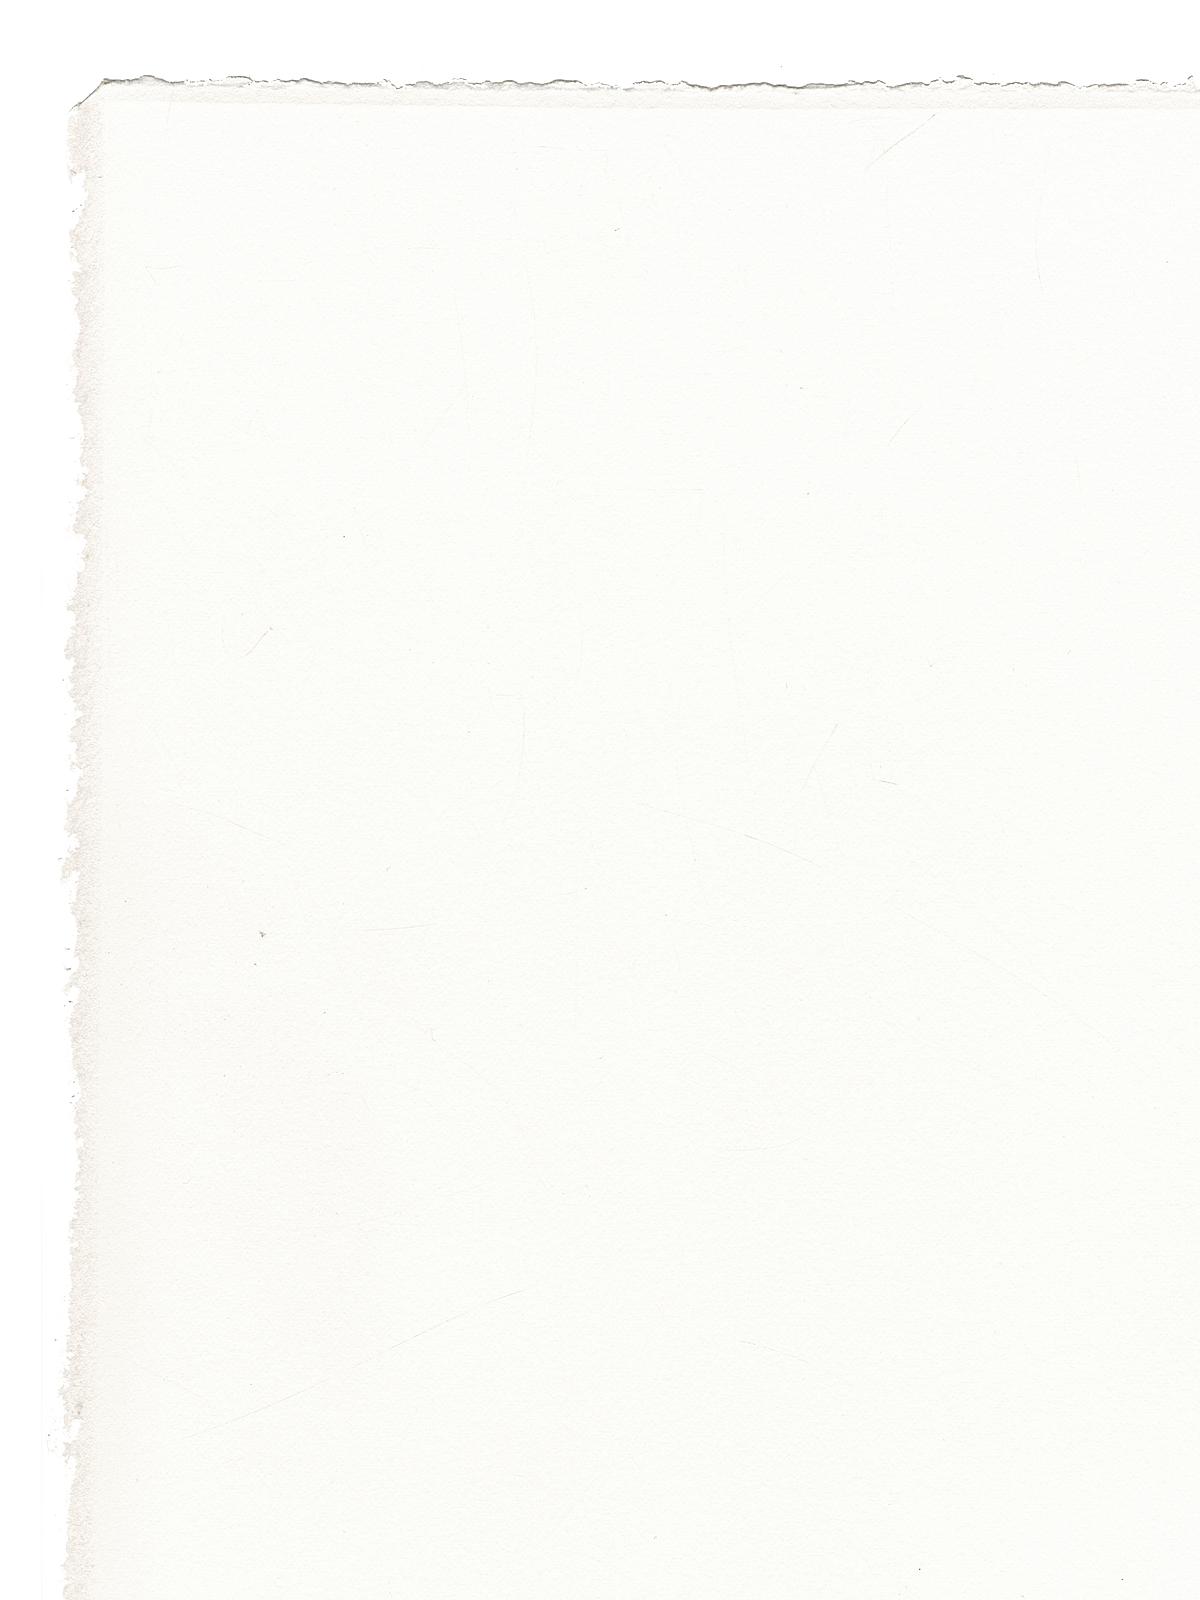 Rives Bfk Printmaking Paper 22 In. X 30 In. White 280 Gm